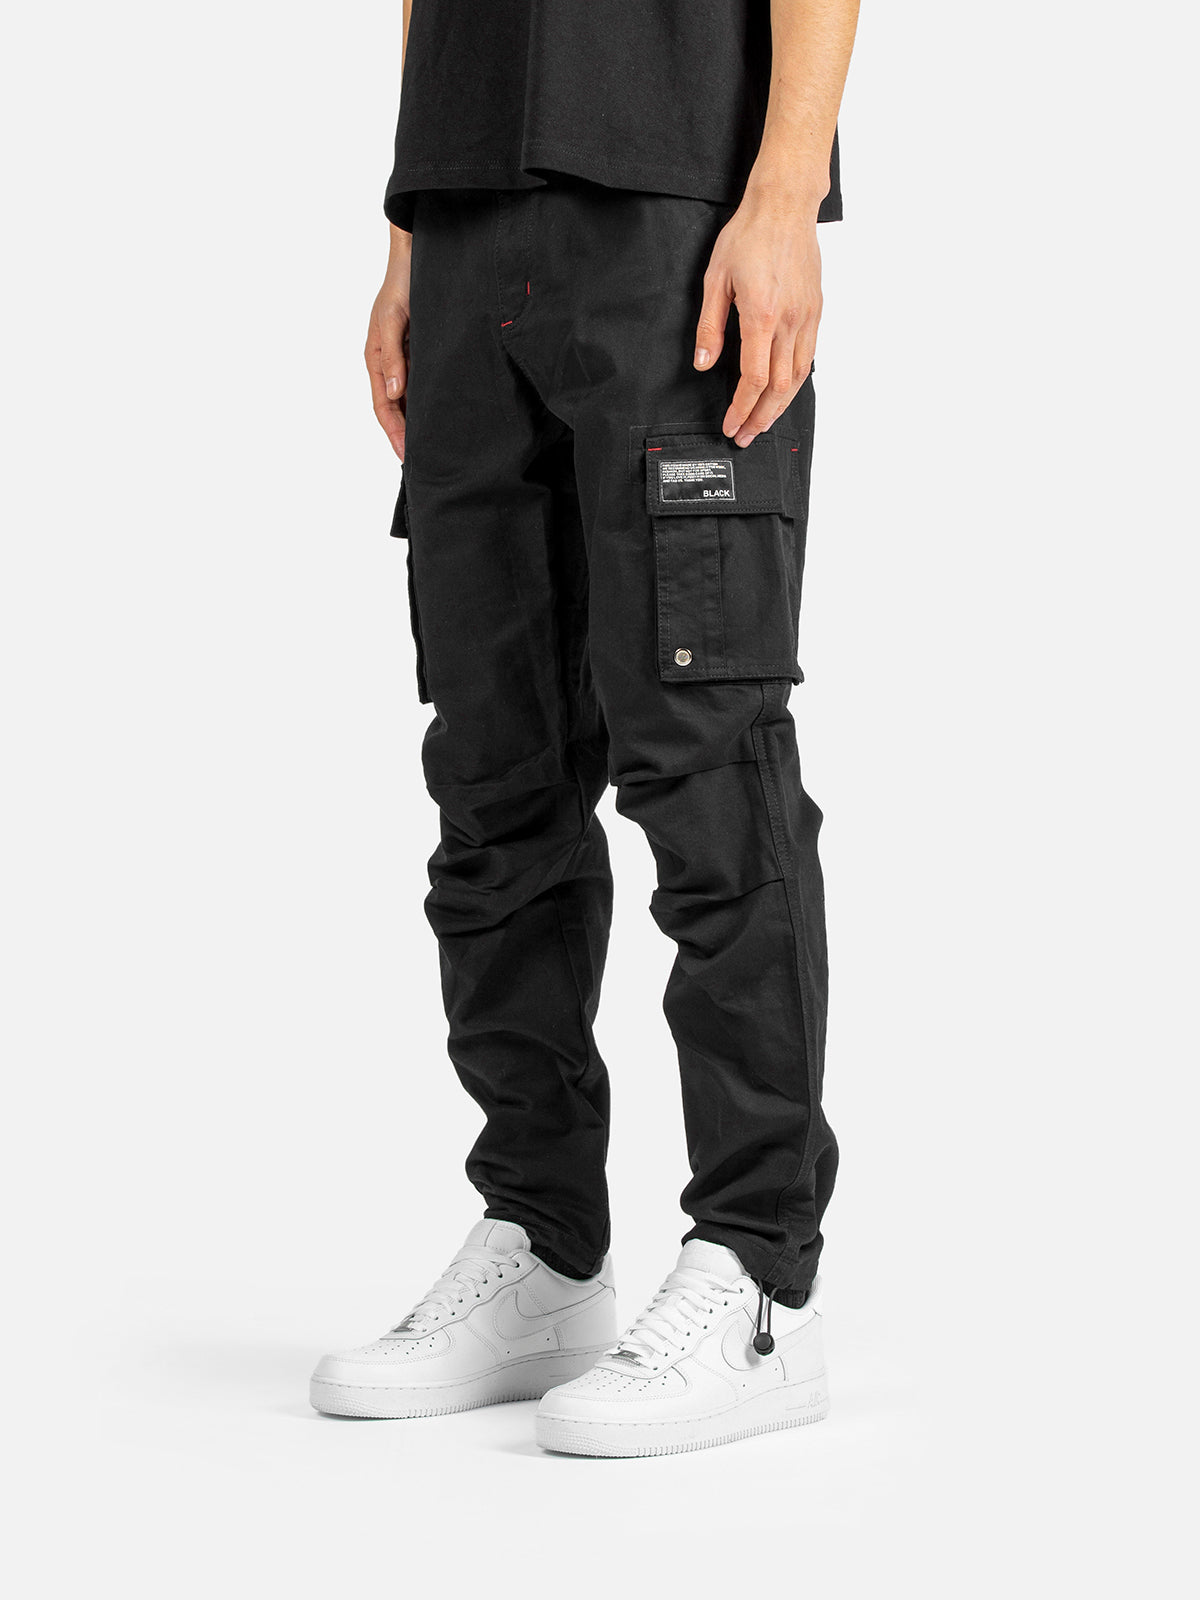 C9 Cargo Pants - Black | Blacktailor – BLACKTAILOR